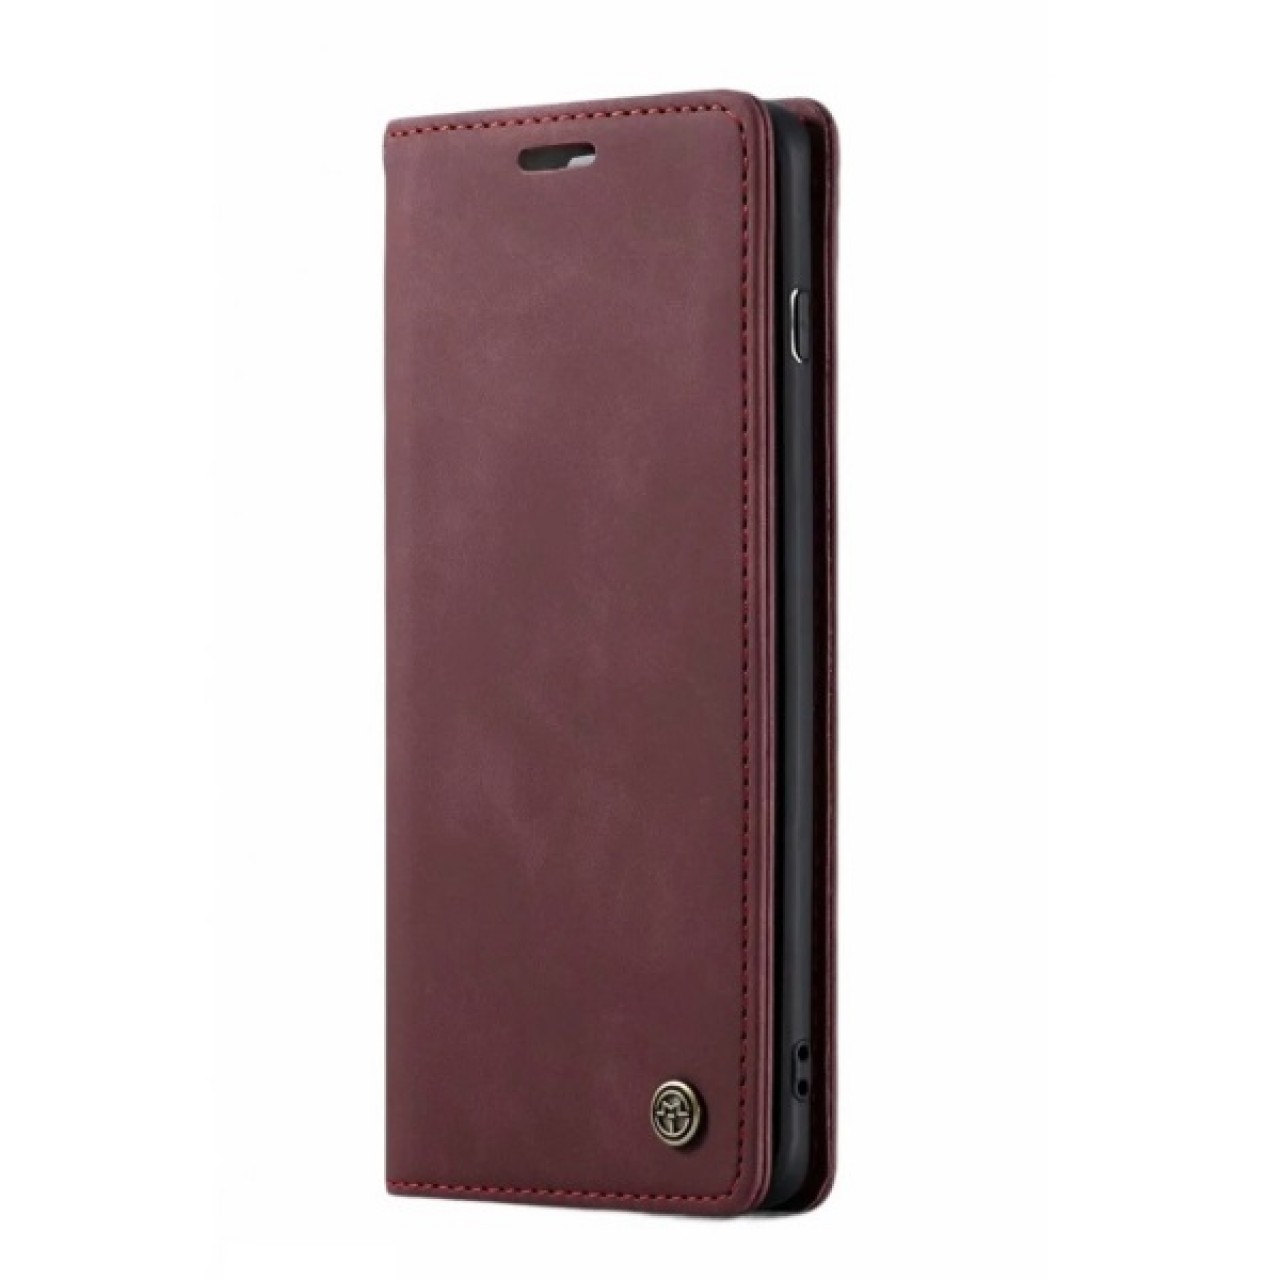 Samsung Galaxy A51 Δερμάτινη Θήκη Κινητού Μαγνητική - Mobile Case Leather Book CaseMe Plum